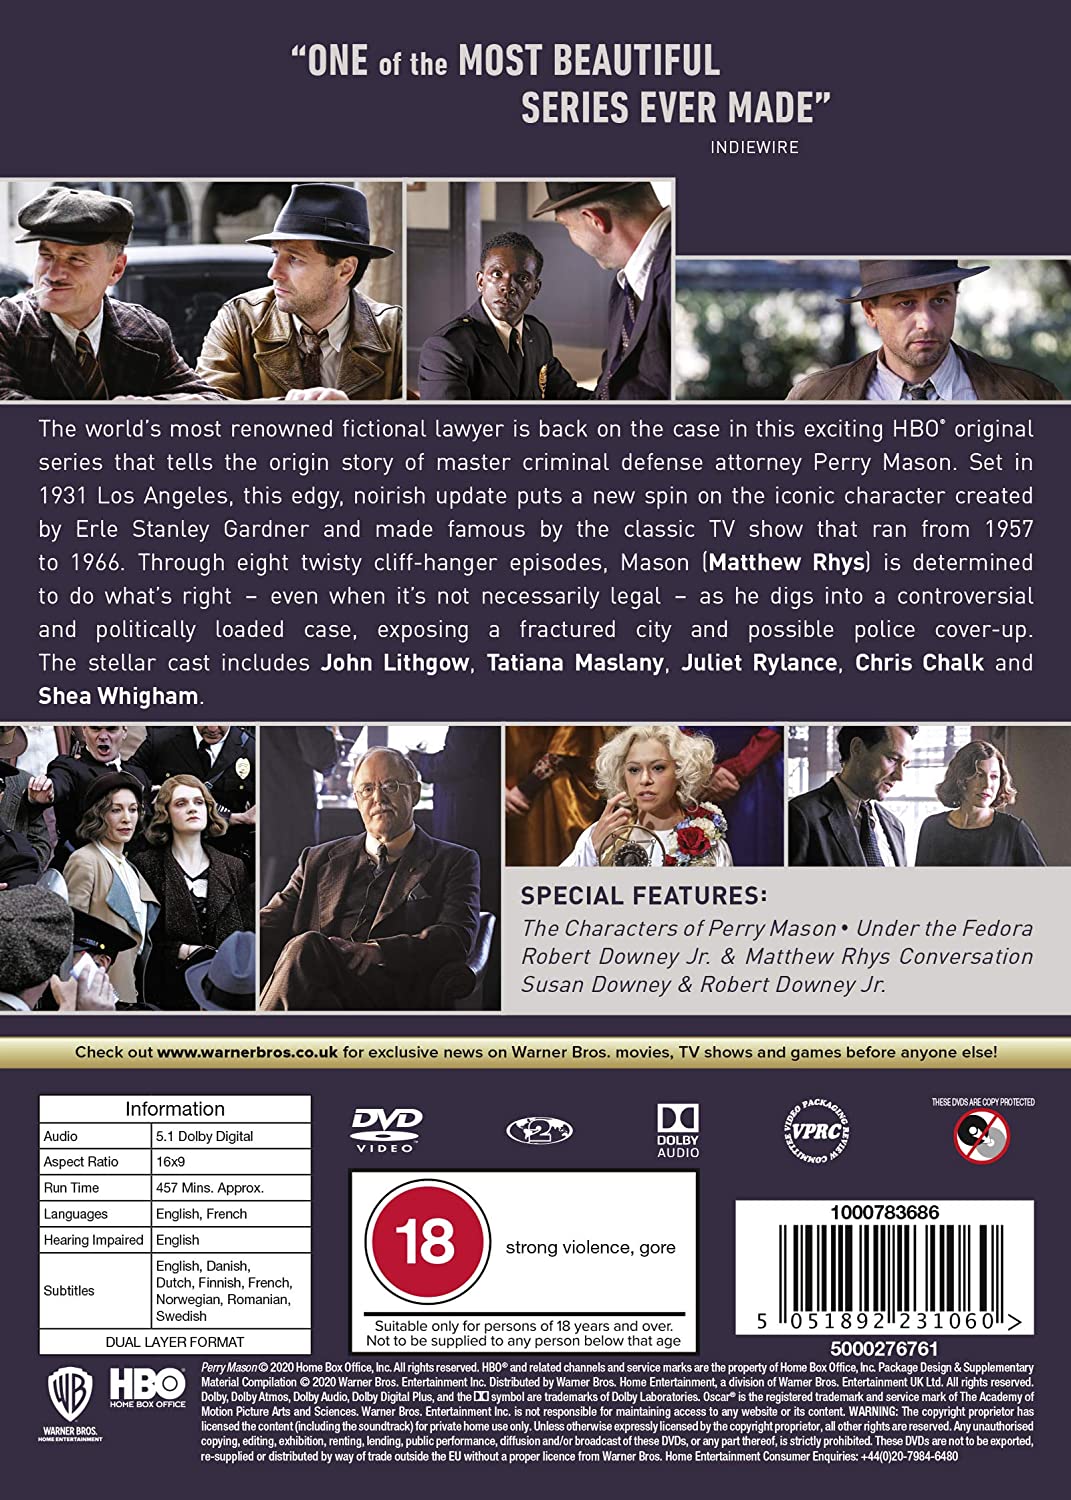 Perry Mason: Season 1 [2020] (DVD)